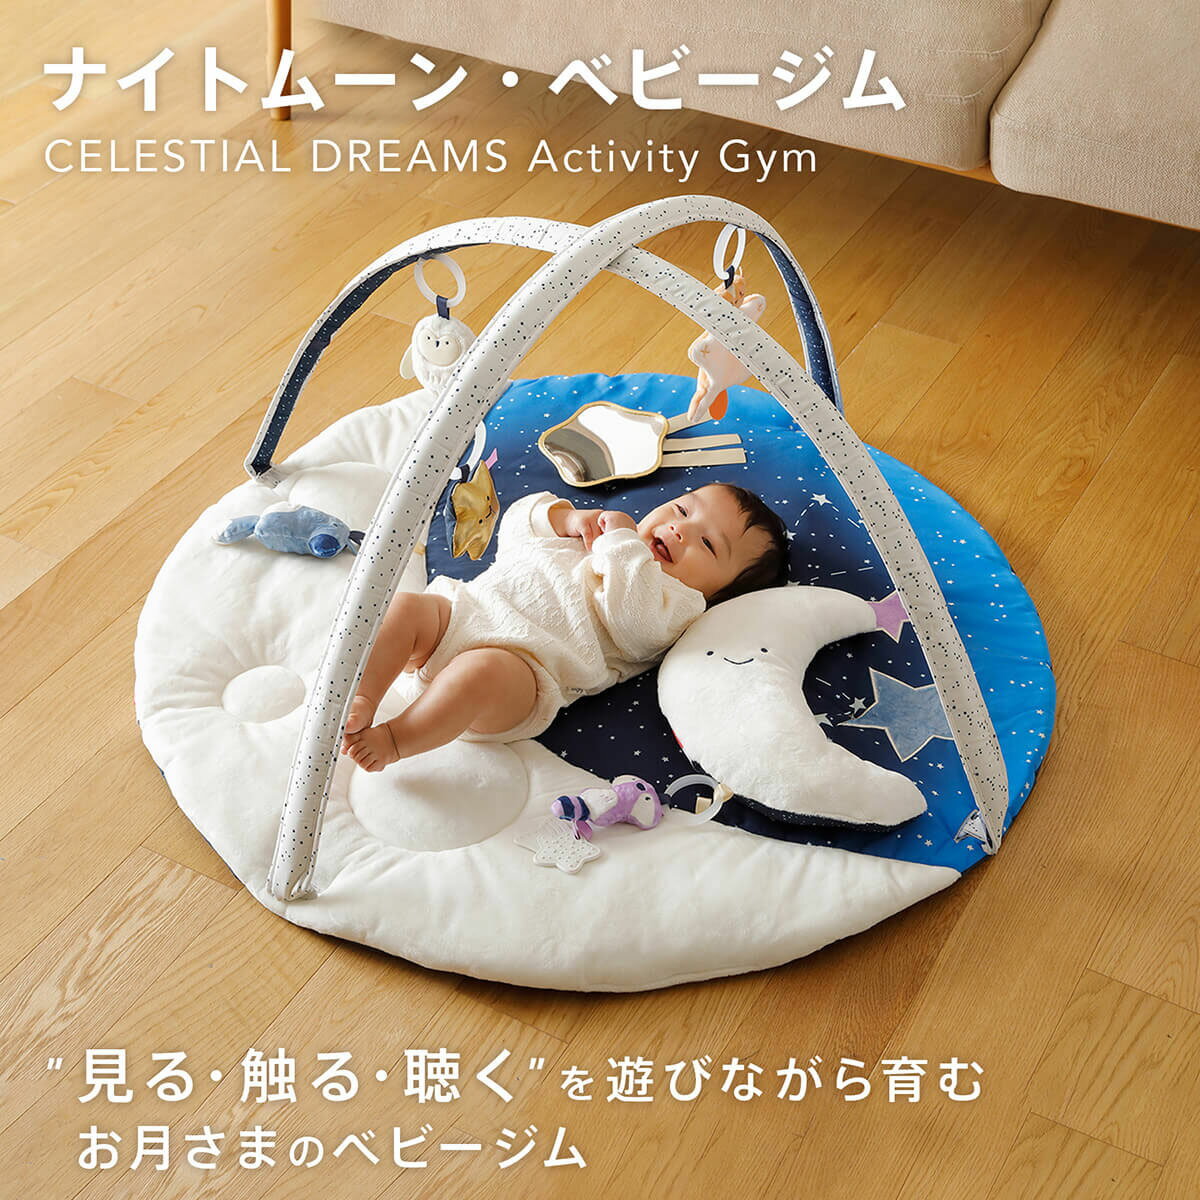 日本育児 Nihon ikuji ひつじのショーン アクティビティプレイジム 706523 新生児から 遊ぶ ベビー 赤ちゃん プレゼント 出産祝い